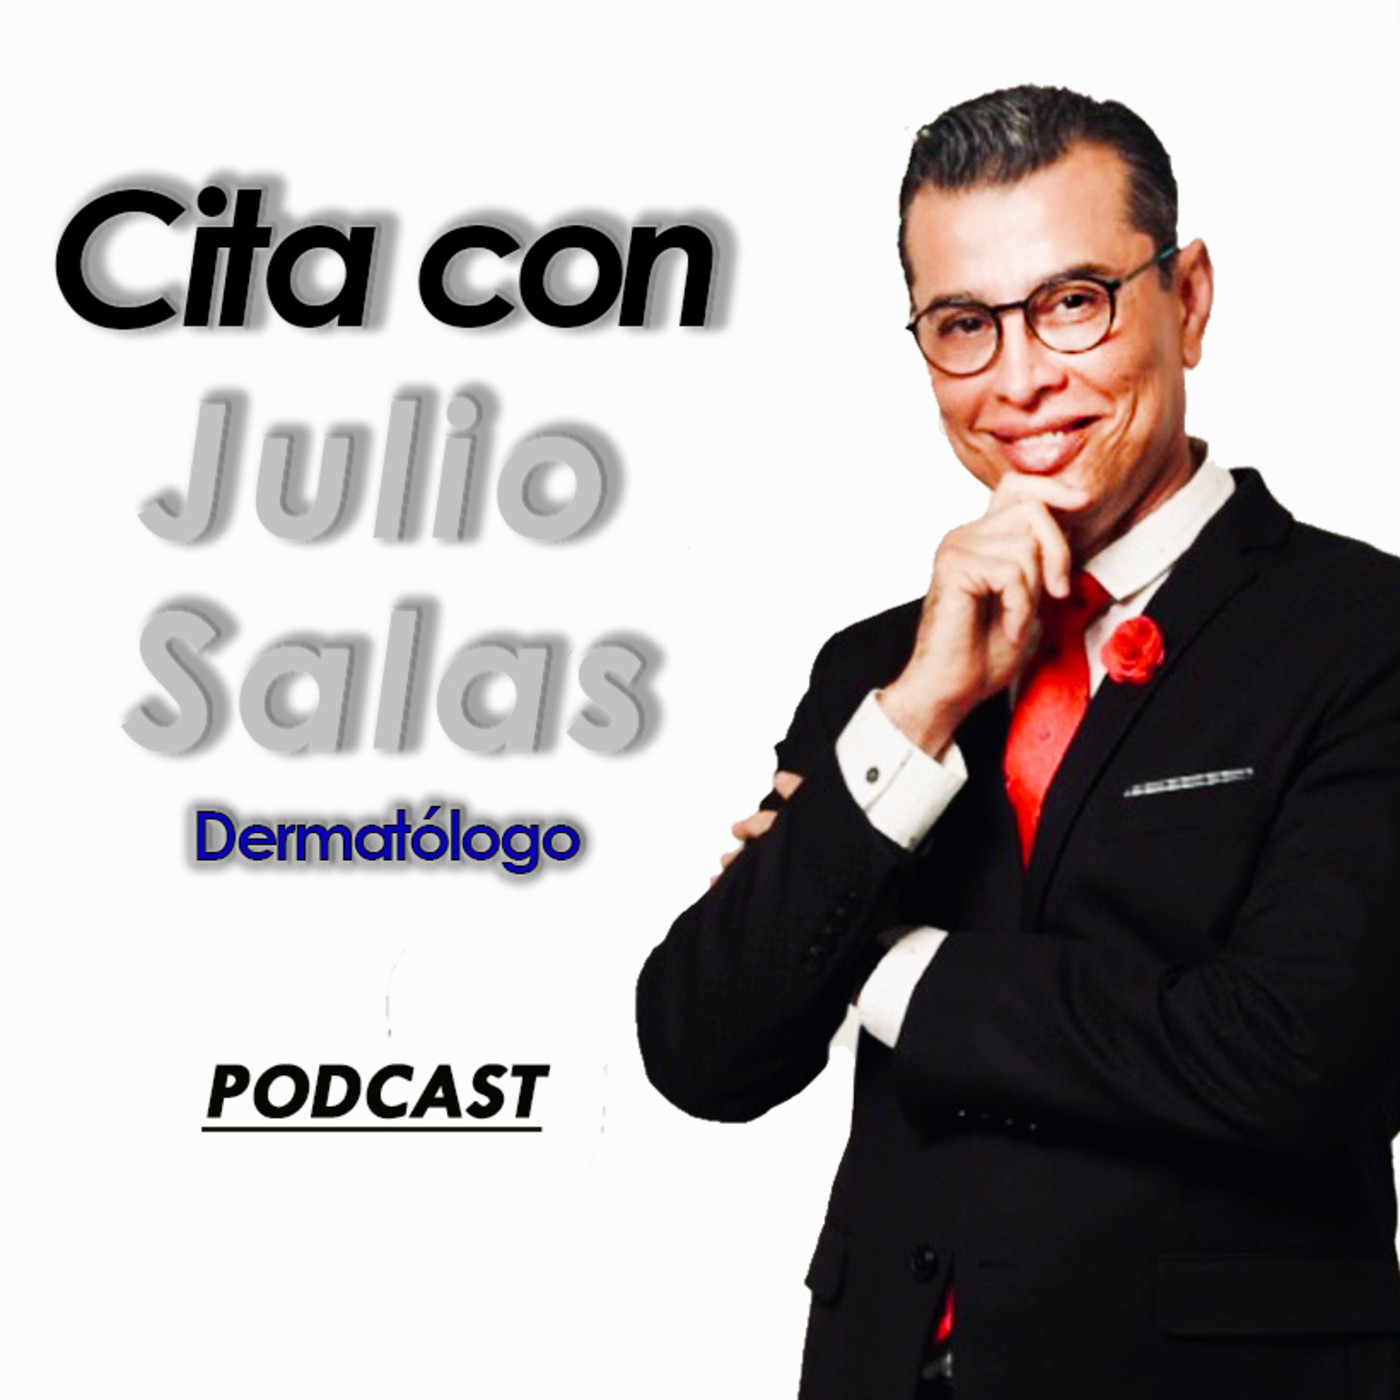 Cita con Julio Salas